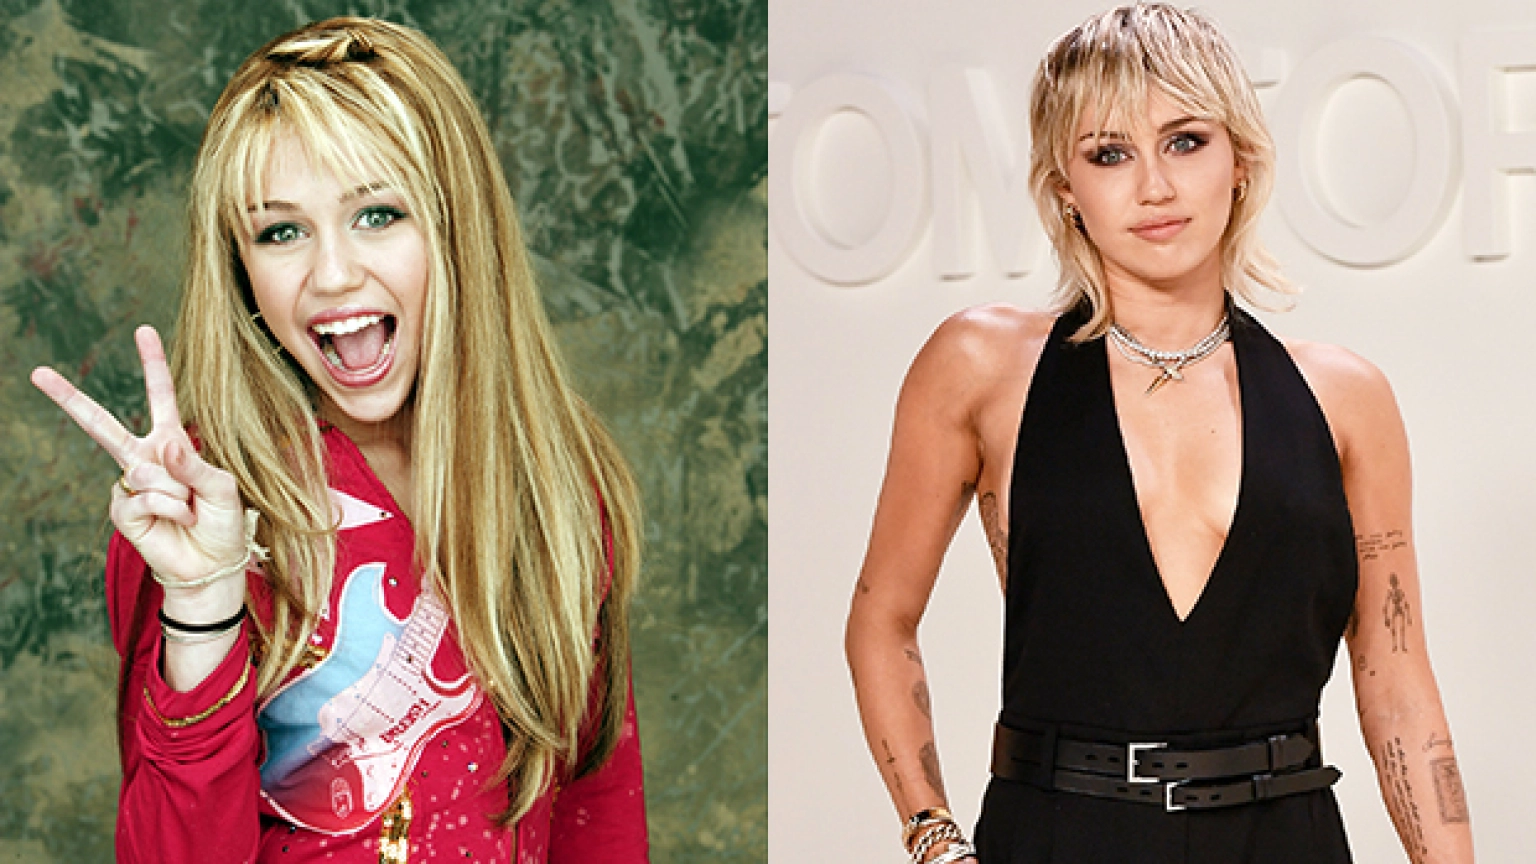 Miley Cyrus como Hannah Montana con una peluca rubia larga, sonriendo con la boca abierta y el signo de la paz. Miley Cyrus ahora con cabello corto, rubio platinado y un top negro escotado mostrando sus tatuajes.